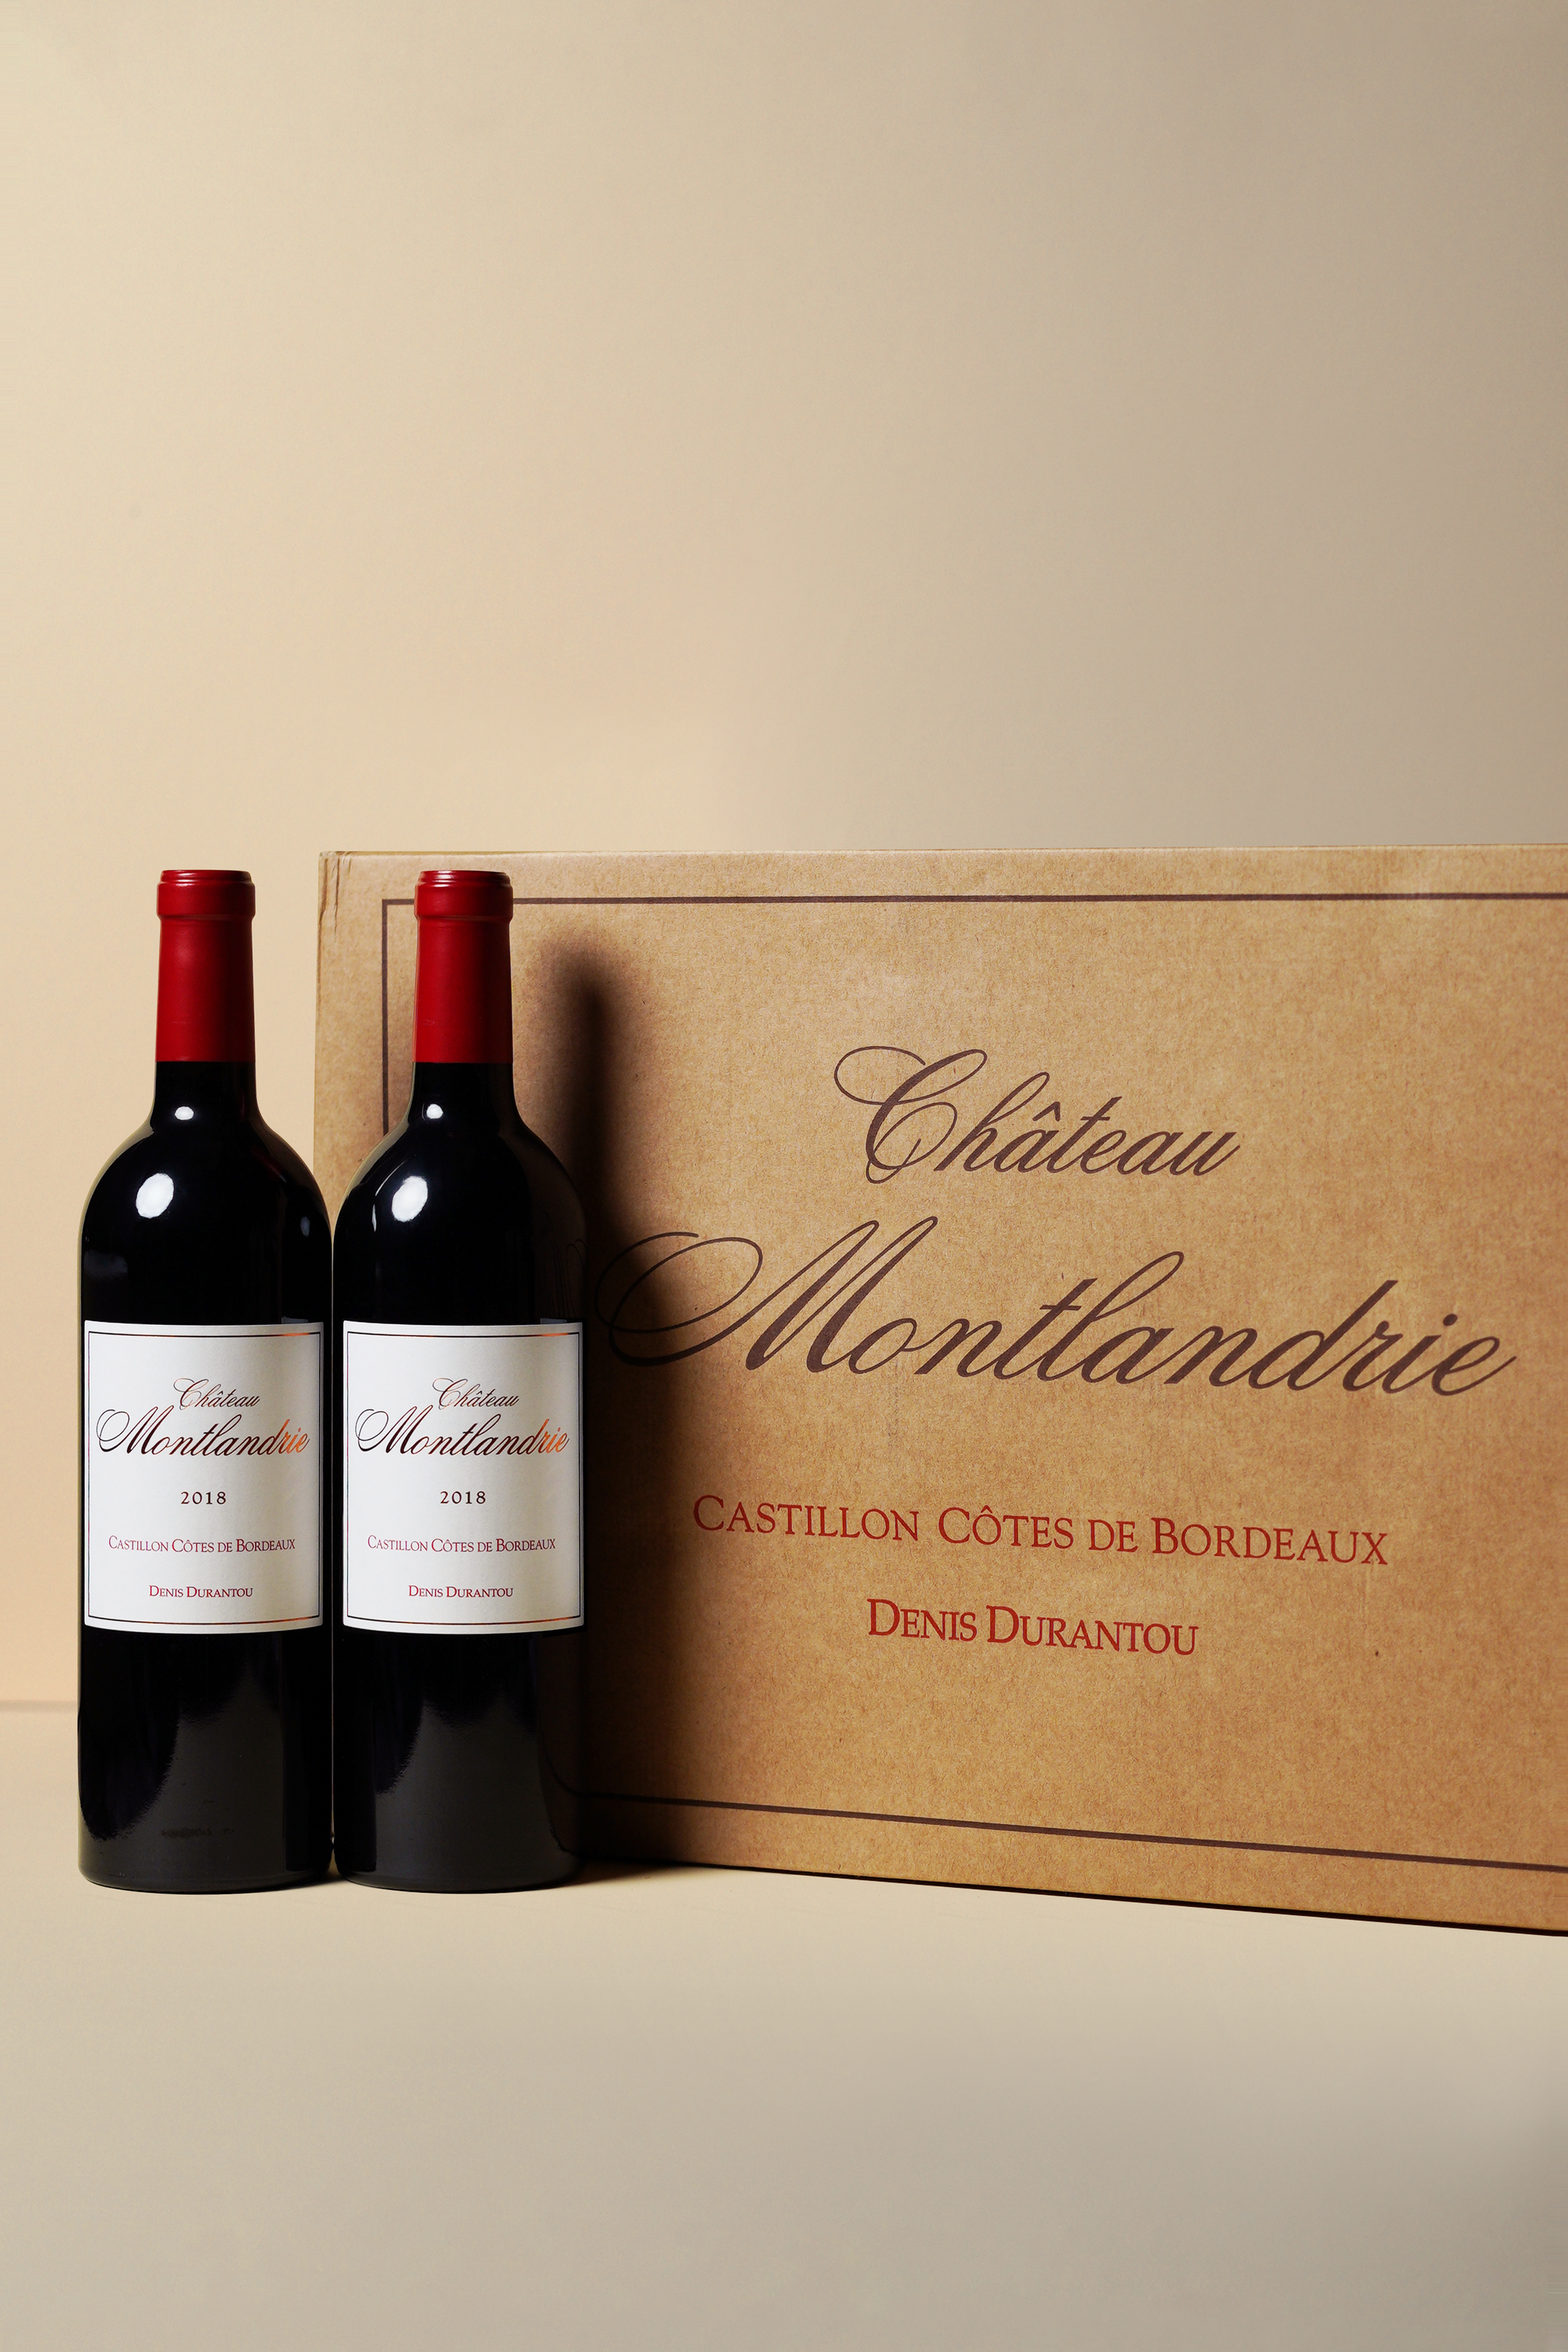 Montlandrie - Castillon Cotes de Bordeaux 2018 (OCC of 6 bottles)